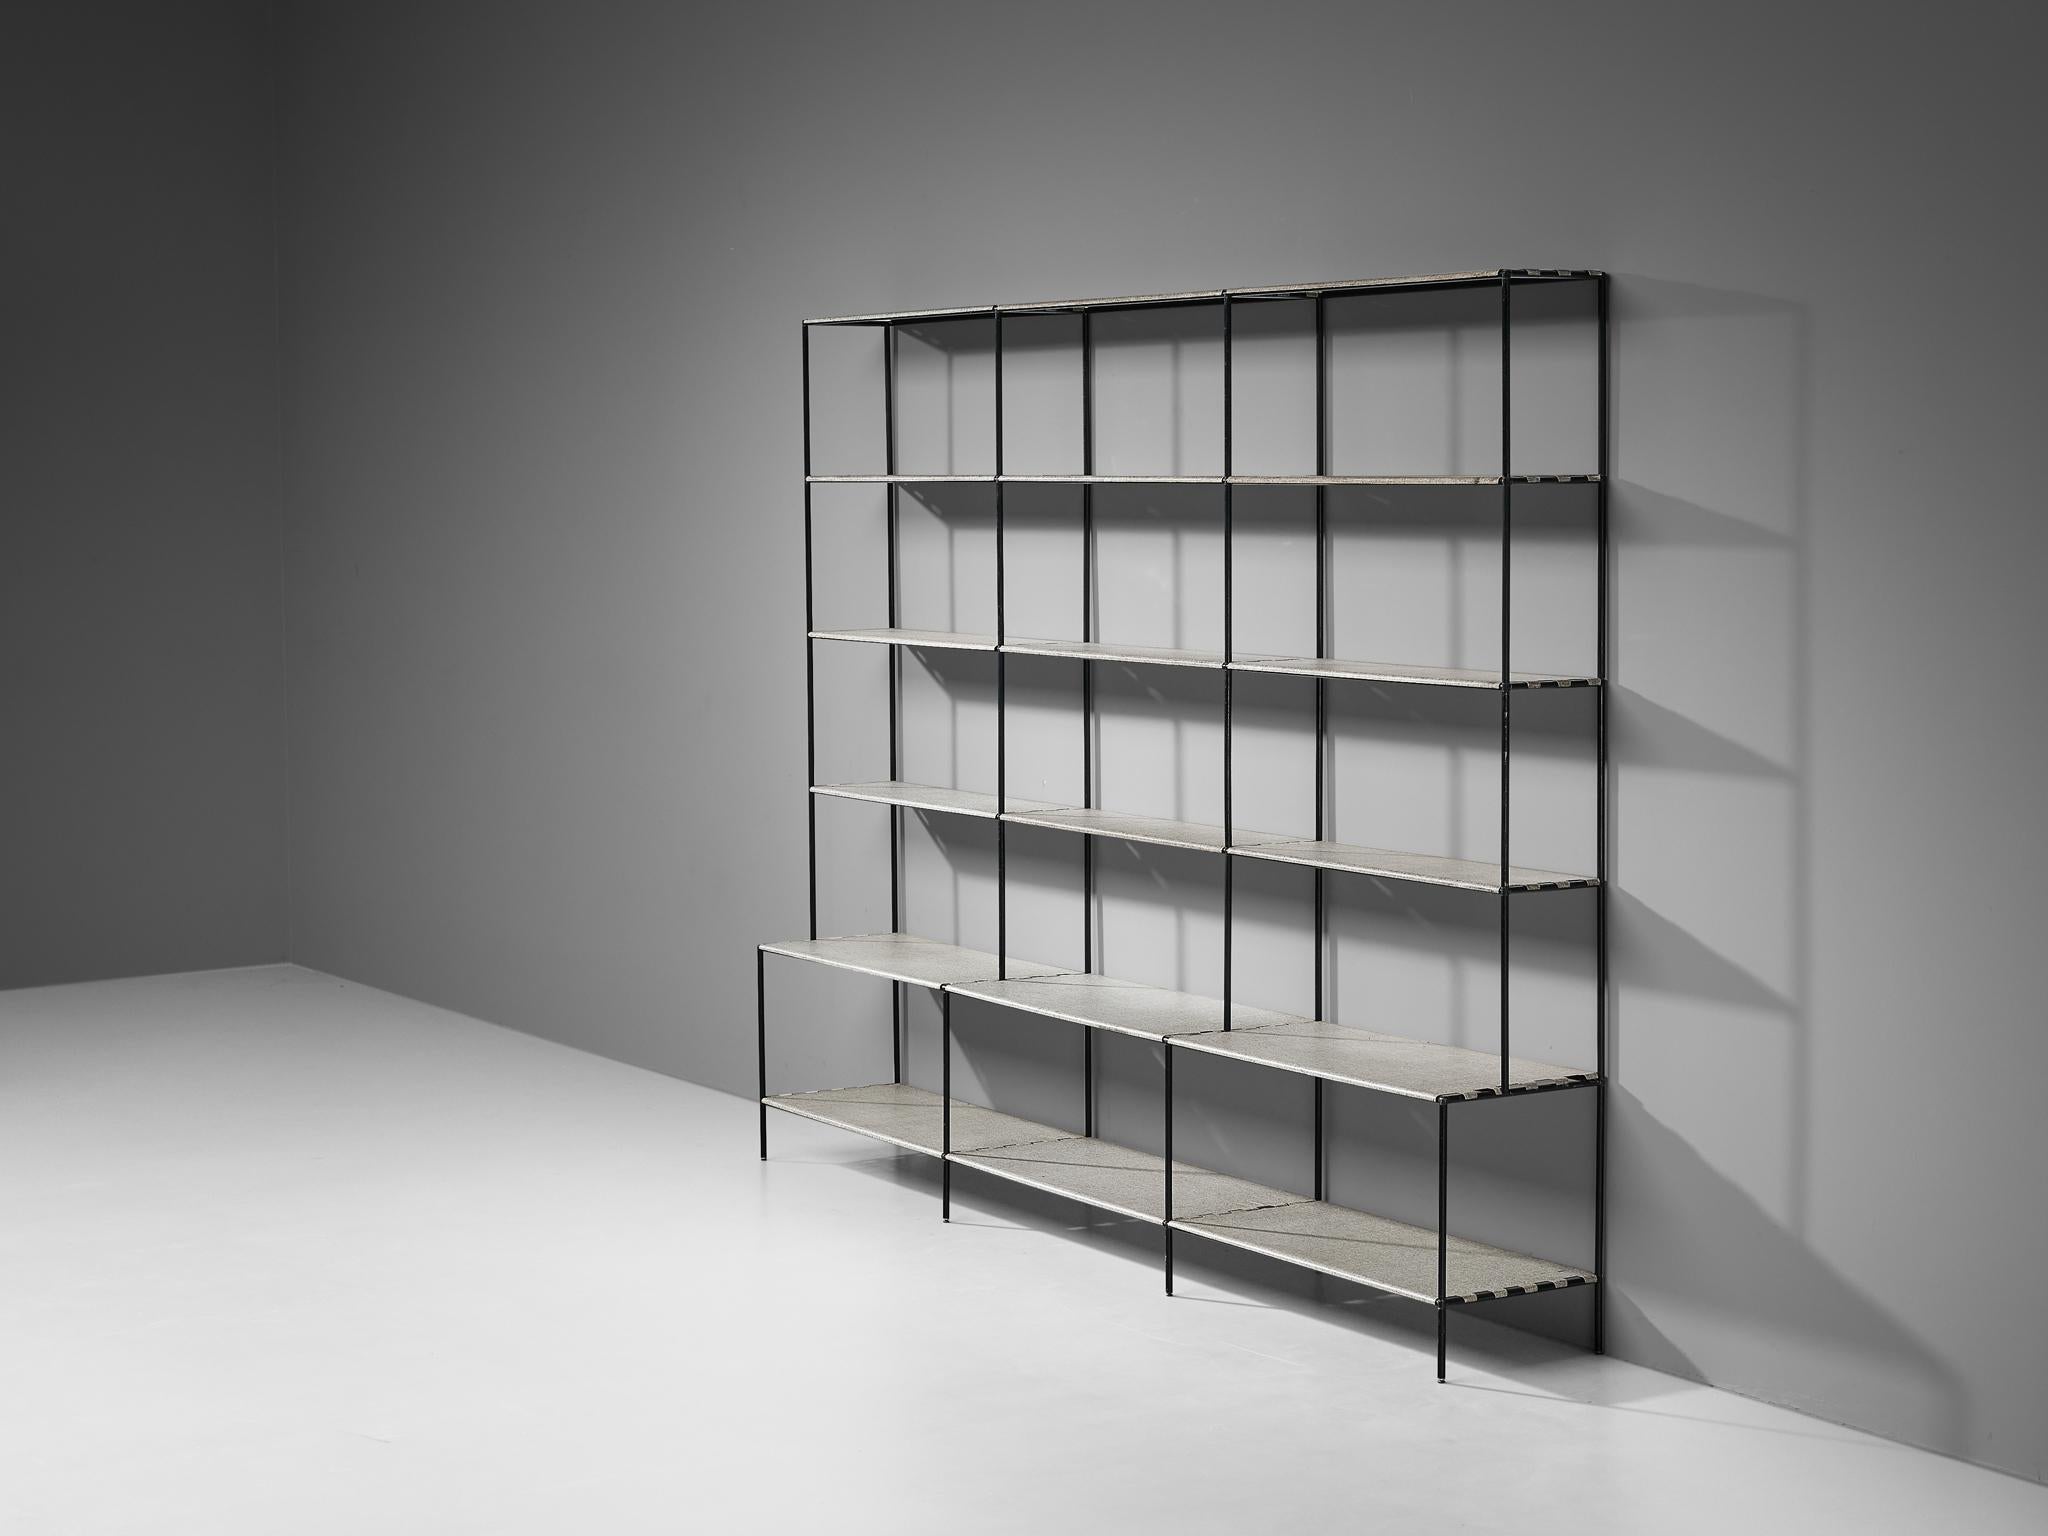 Poul Cadovius, bibliothèque ouverte ou séparateur de pièce, métal, Danemark, années 1960

Ce meuble d'étagère minimaliste et de grande taille a été conçu par Poul Cadovius. Ce système d'étagères se compose d'un cadre fin en métal noir sur lequel des